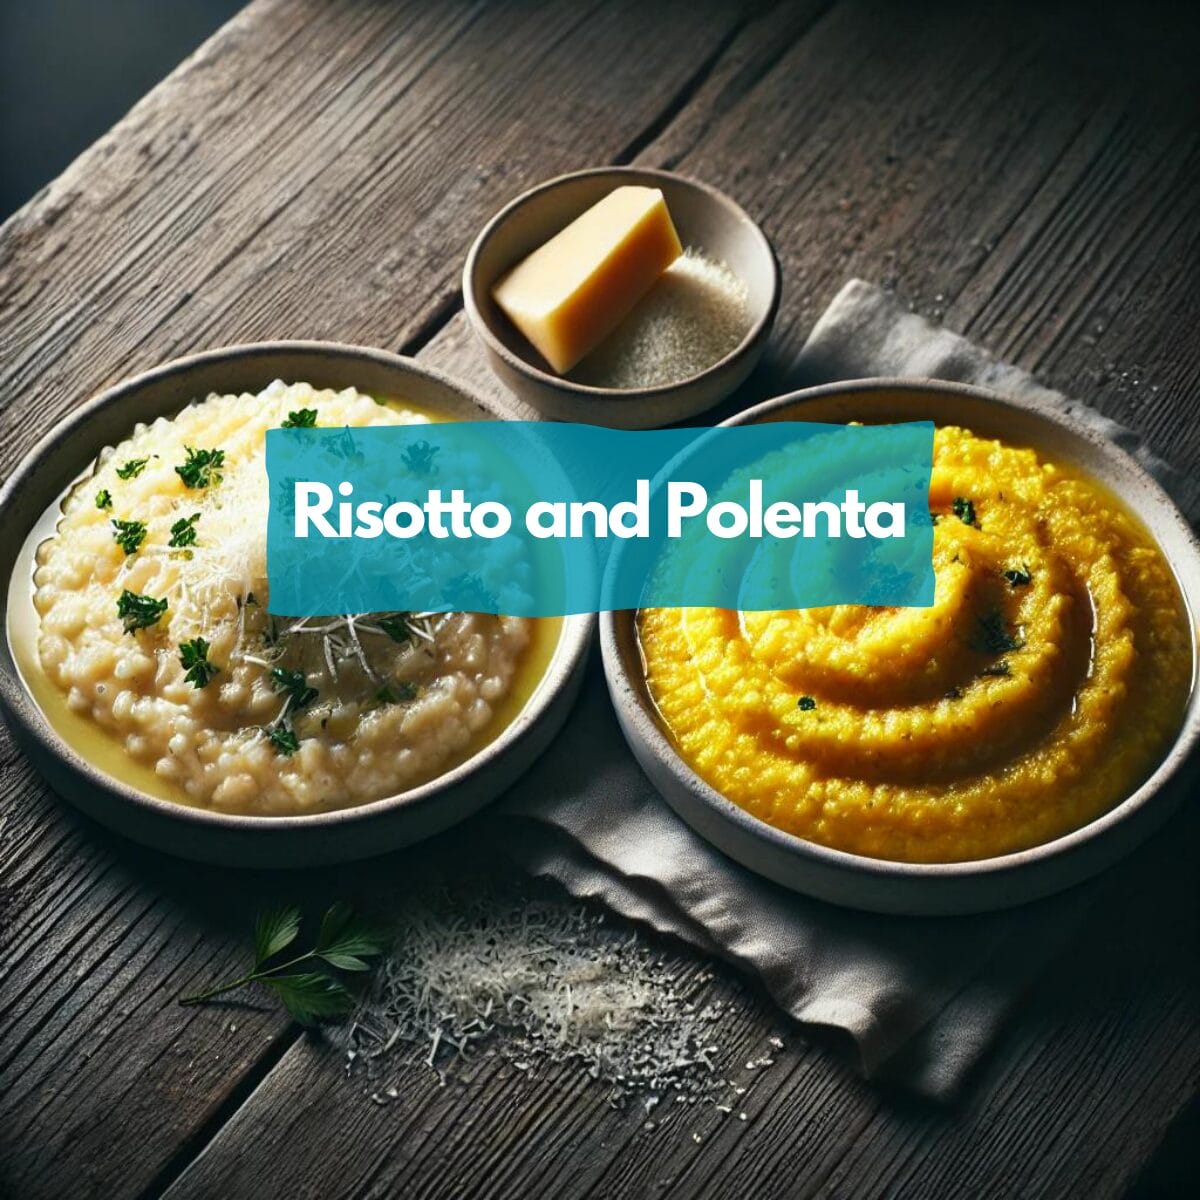 Risotto and polenta